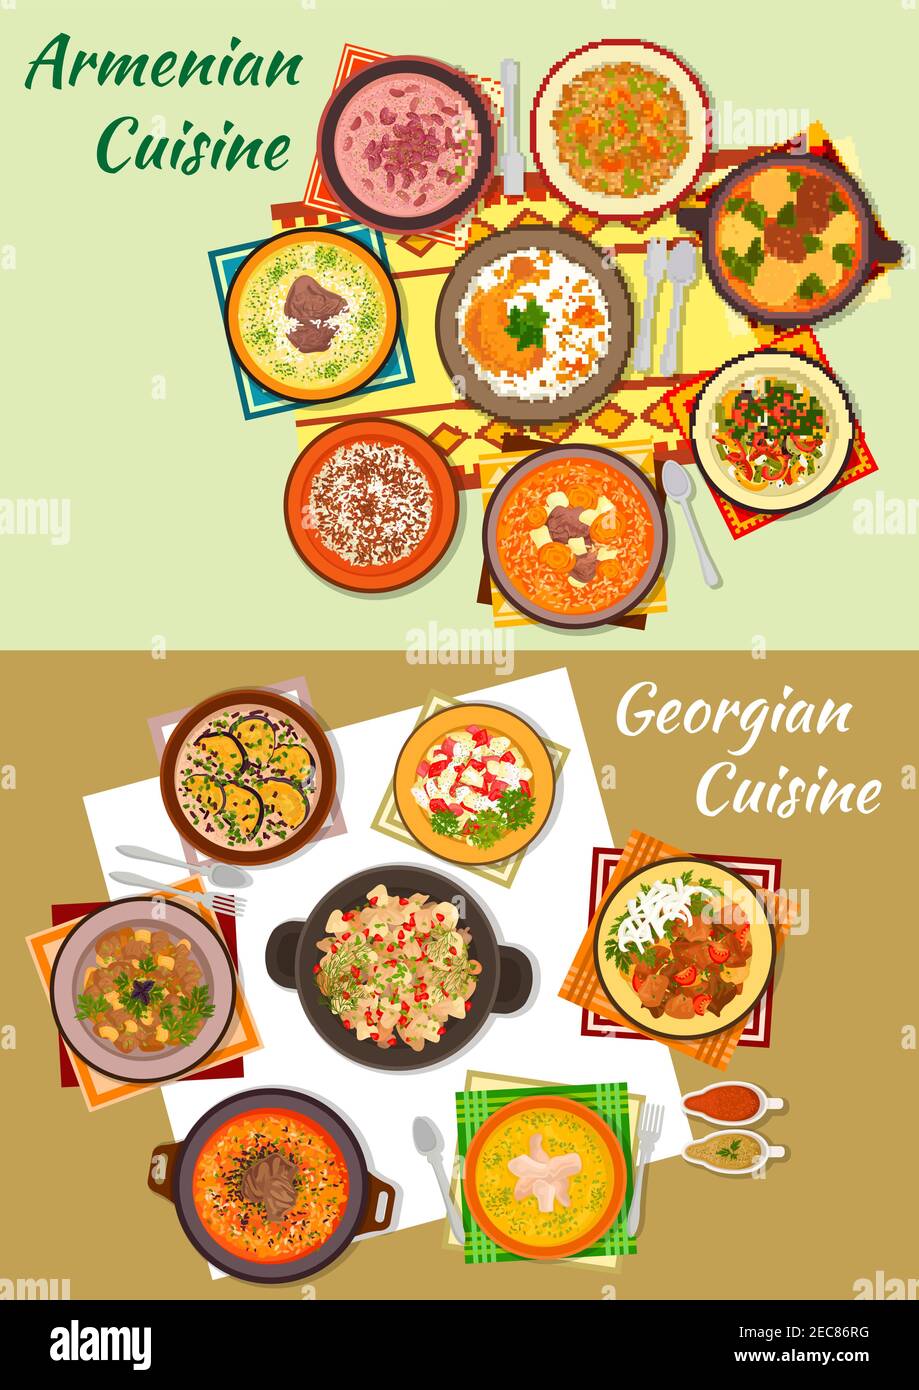 La cuisine géorgienne et arménienne est une icône de plats à base de viande avec riz, fruits secs et grenade, noix, haricots, soupes de yaourt, aubergine avec satsivi, végétabl Illustration de Vecteur